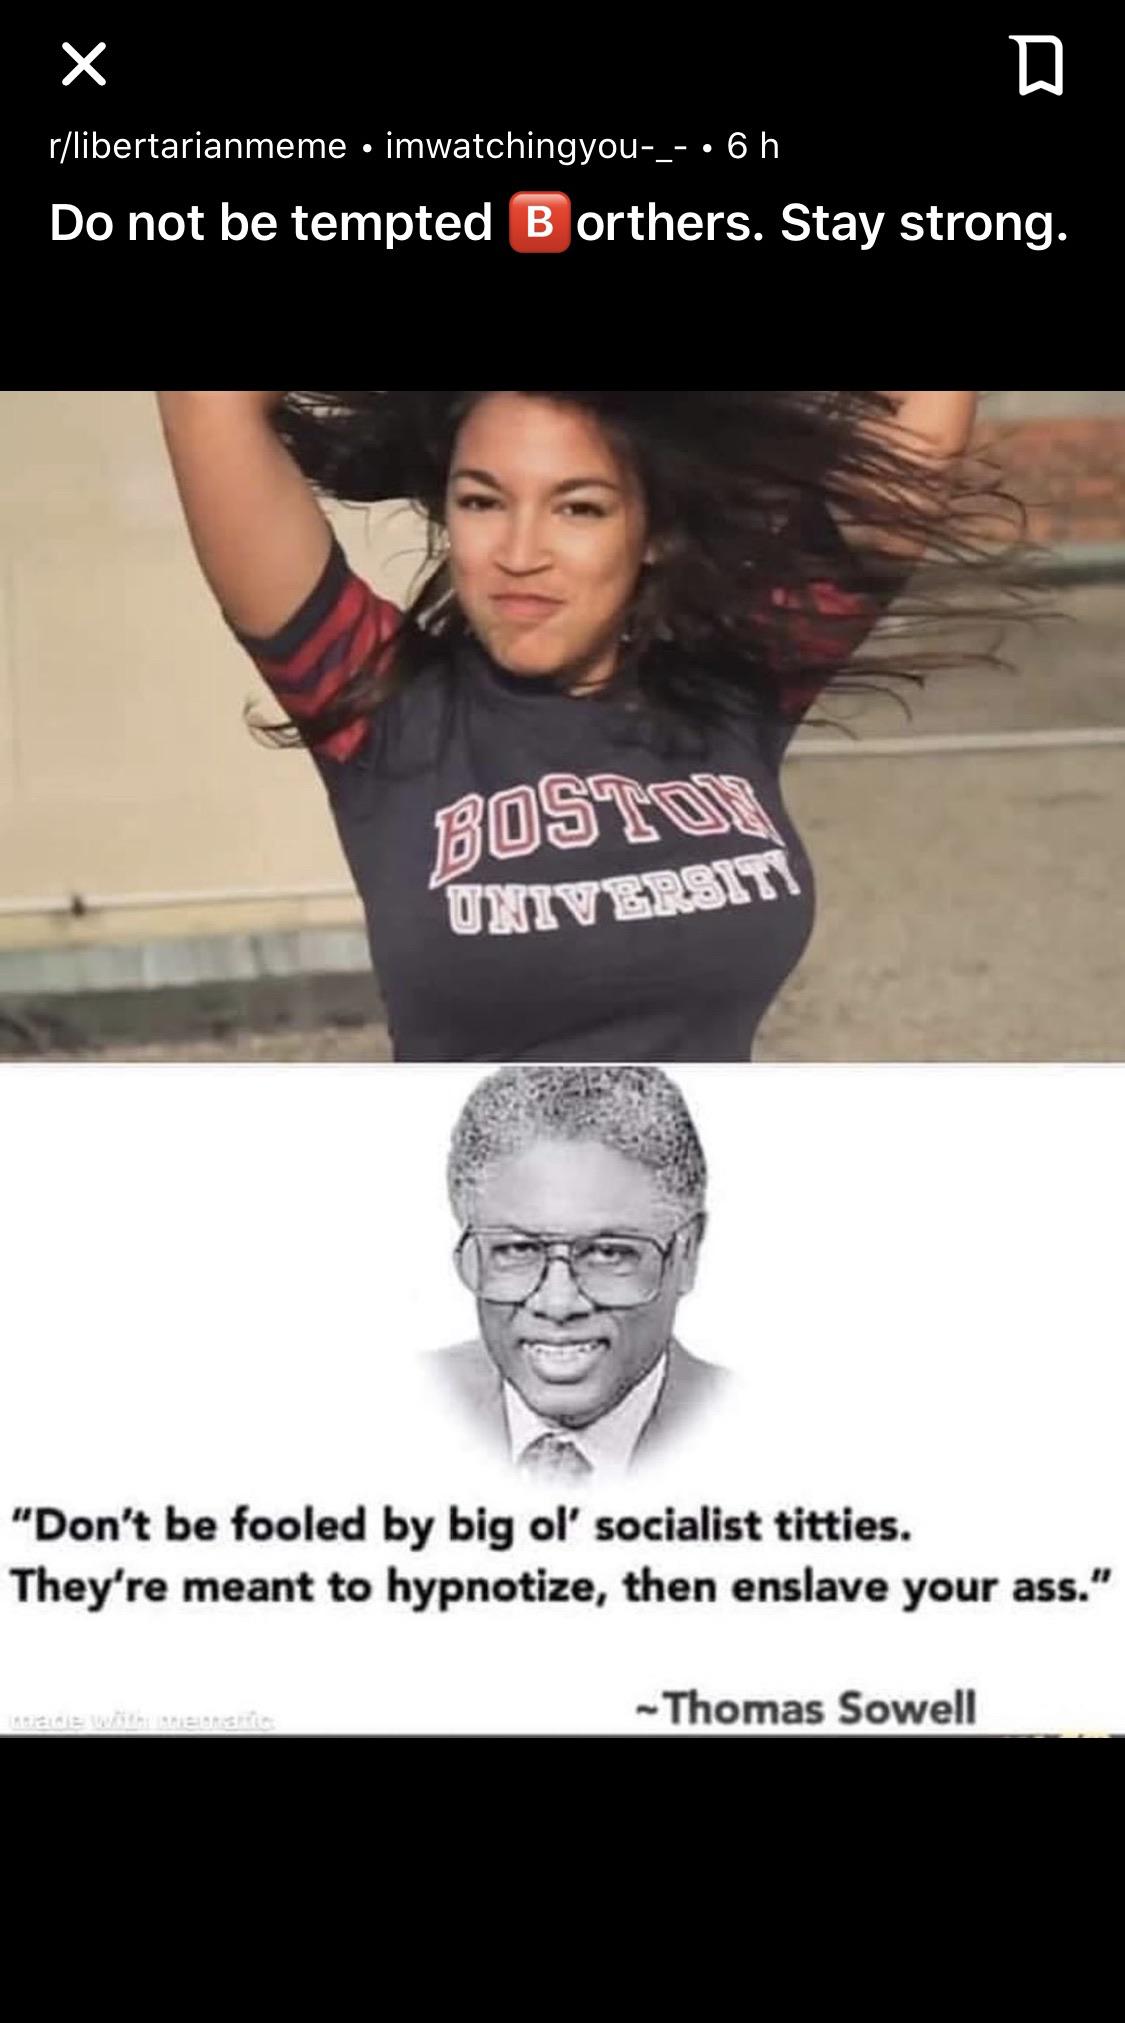 socialist titties